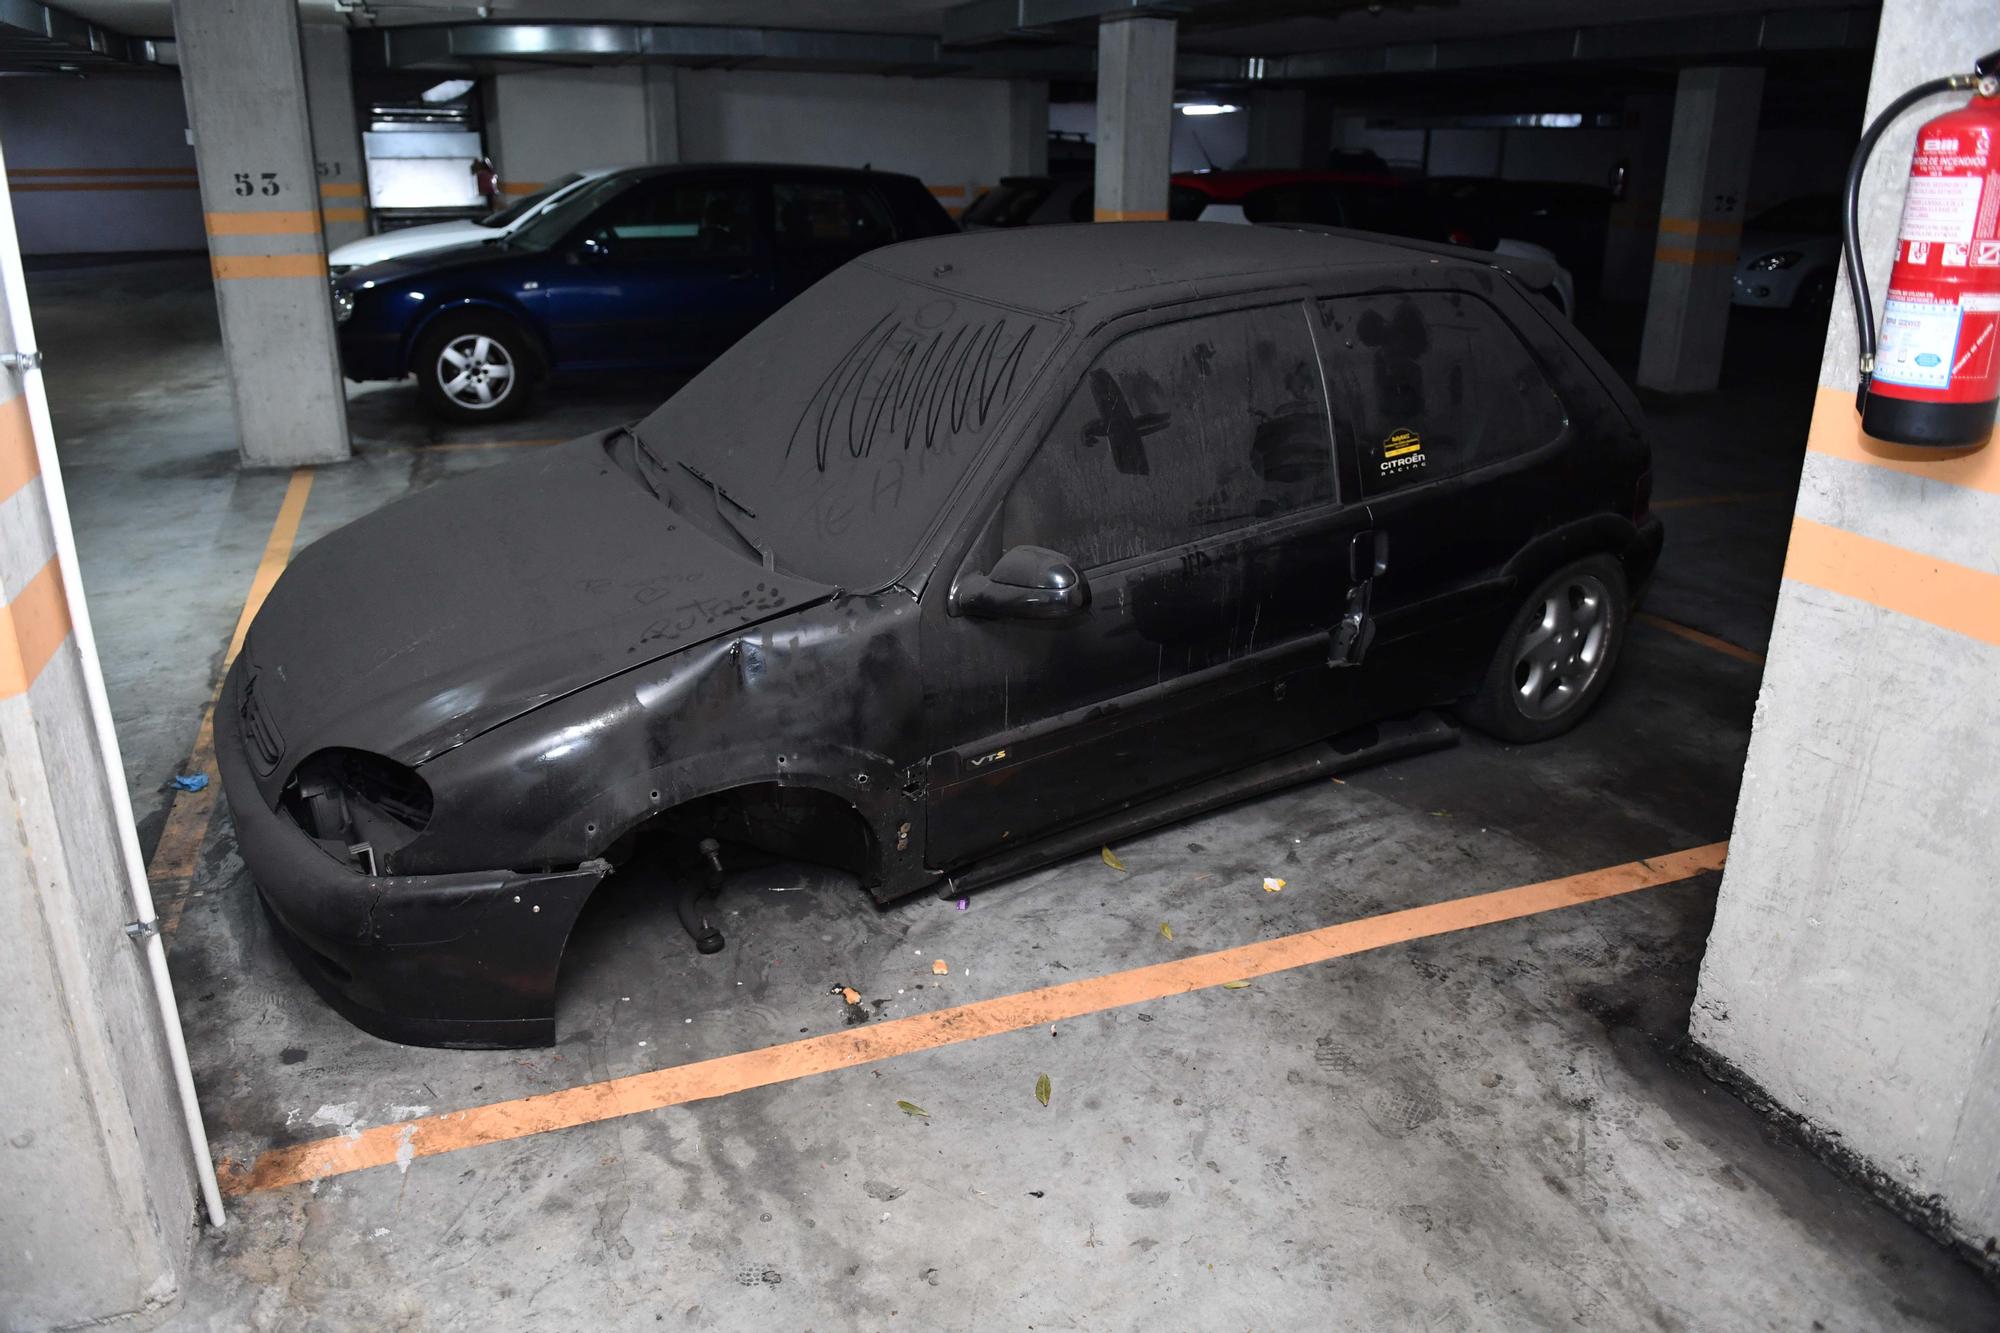 Vecinos de Novo Mesoiro denuncian “un polvorín” en su garaje por motos sin plaza y coches abandonados